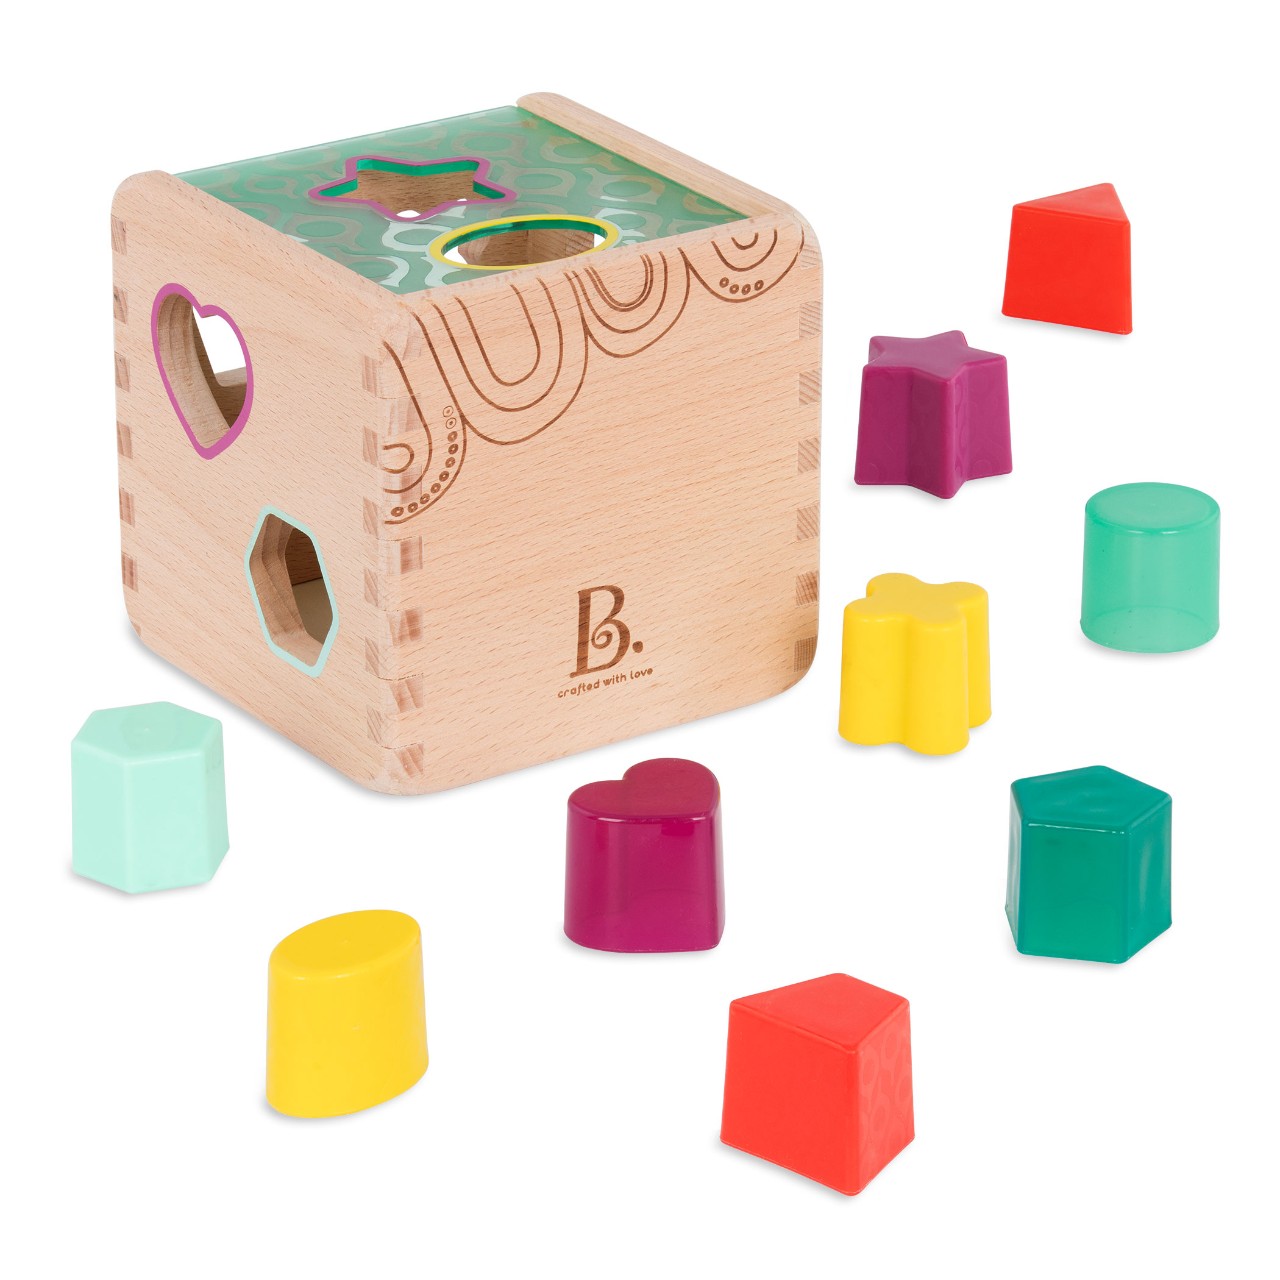 Btoys, Drewniana kostka - sorter kształtów i kolorów (9 różnych kształtów)